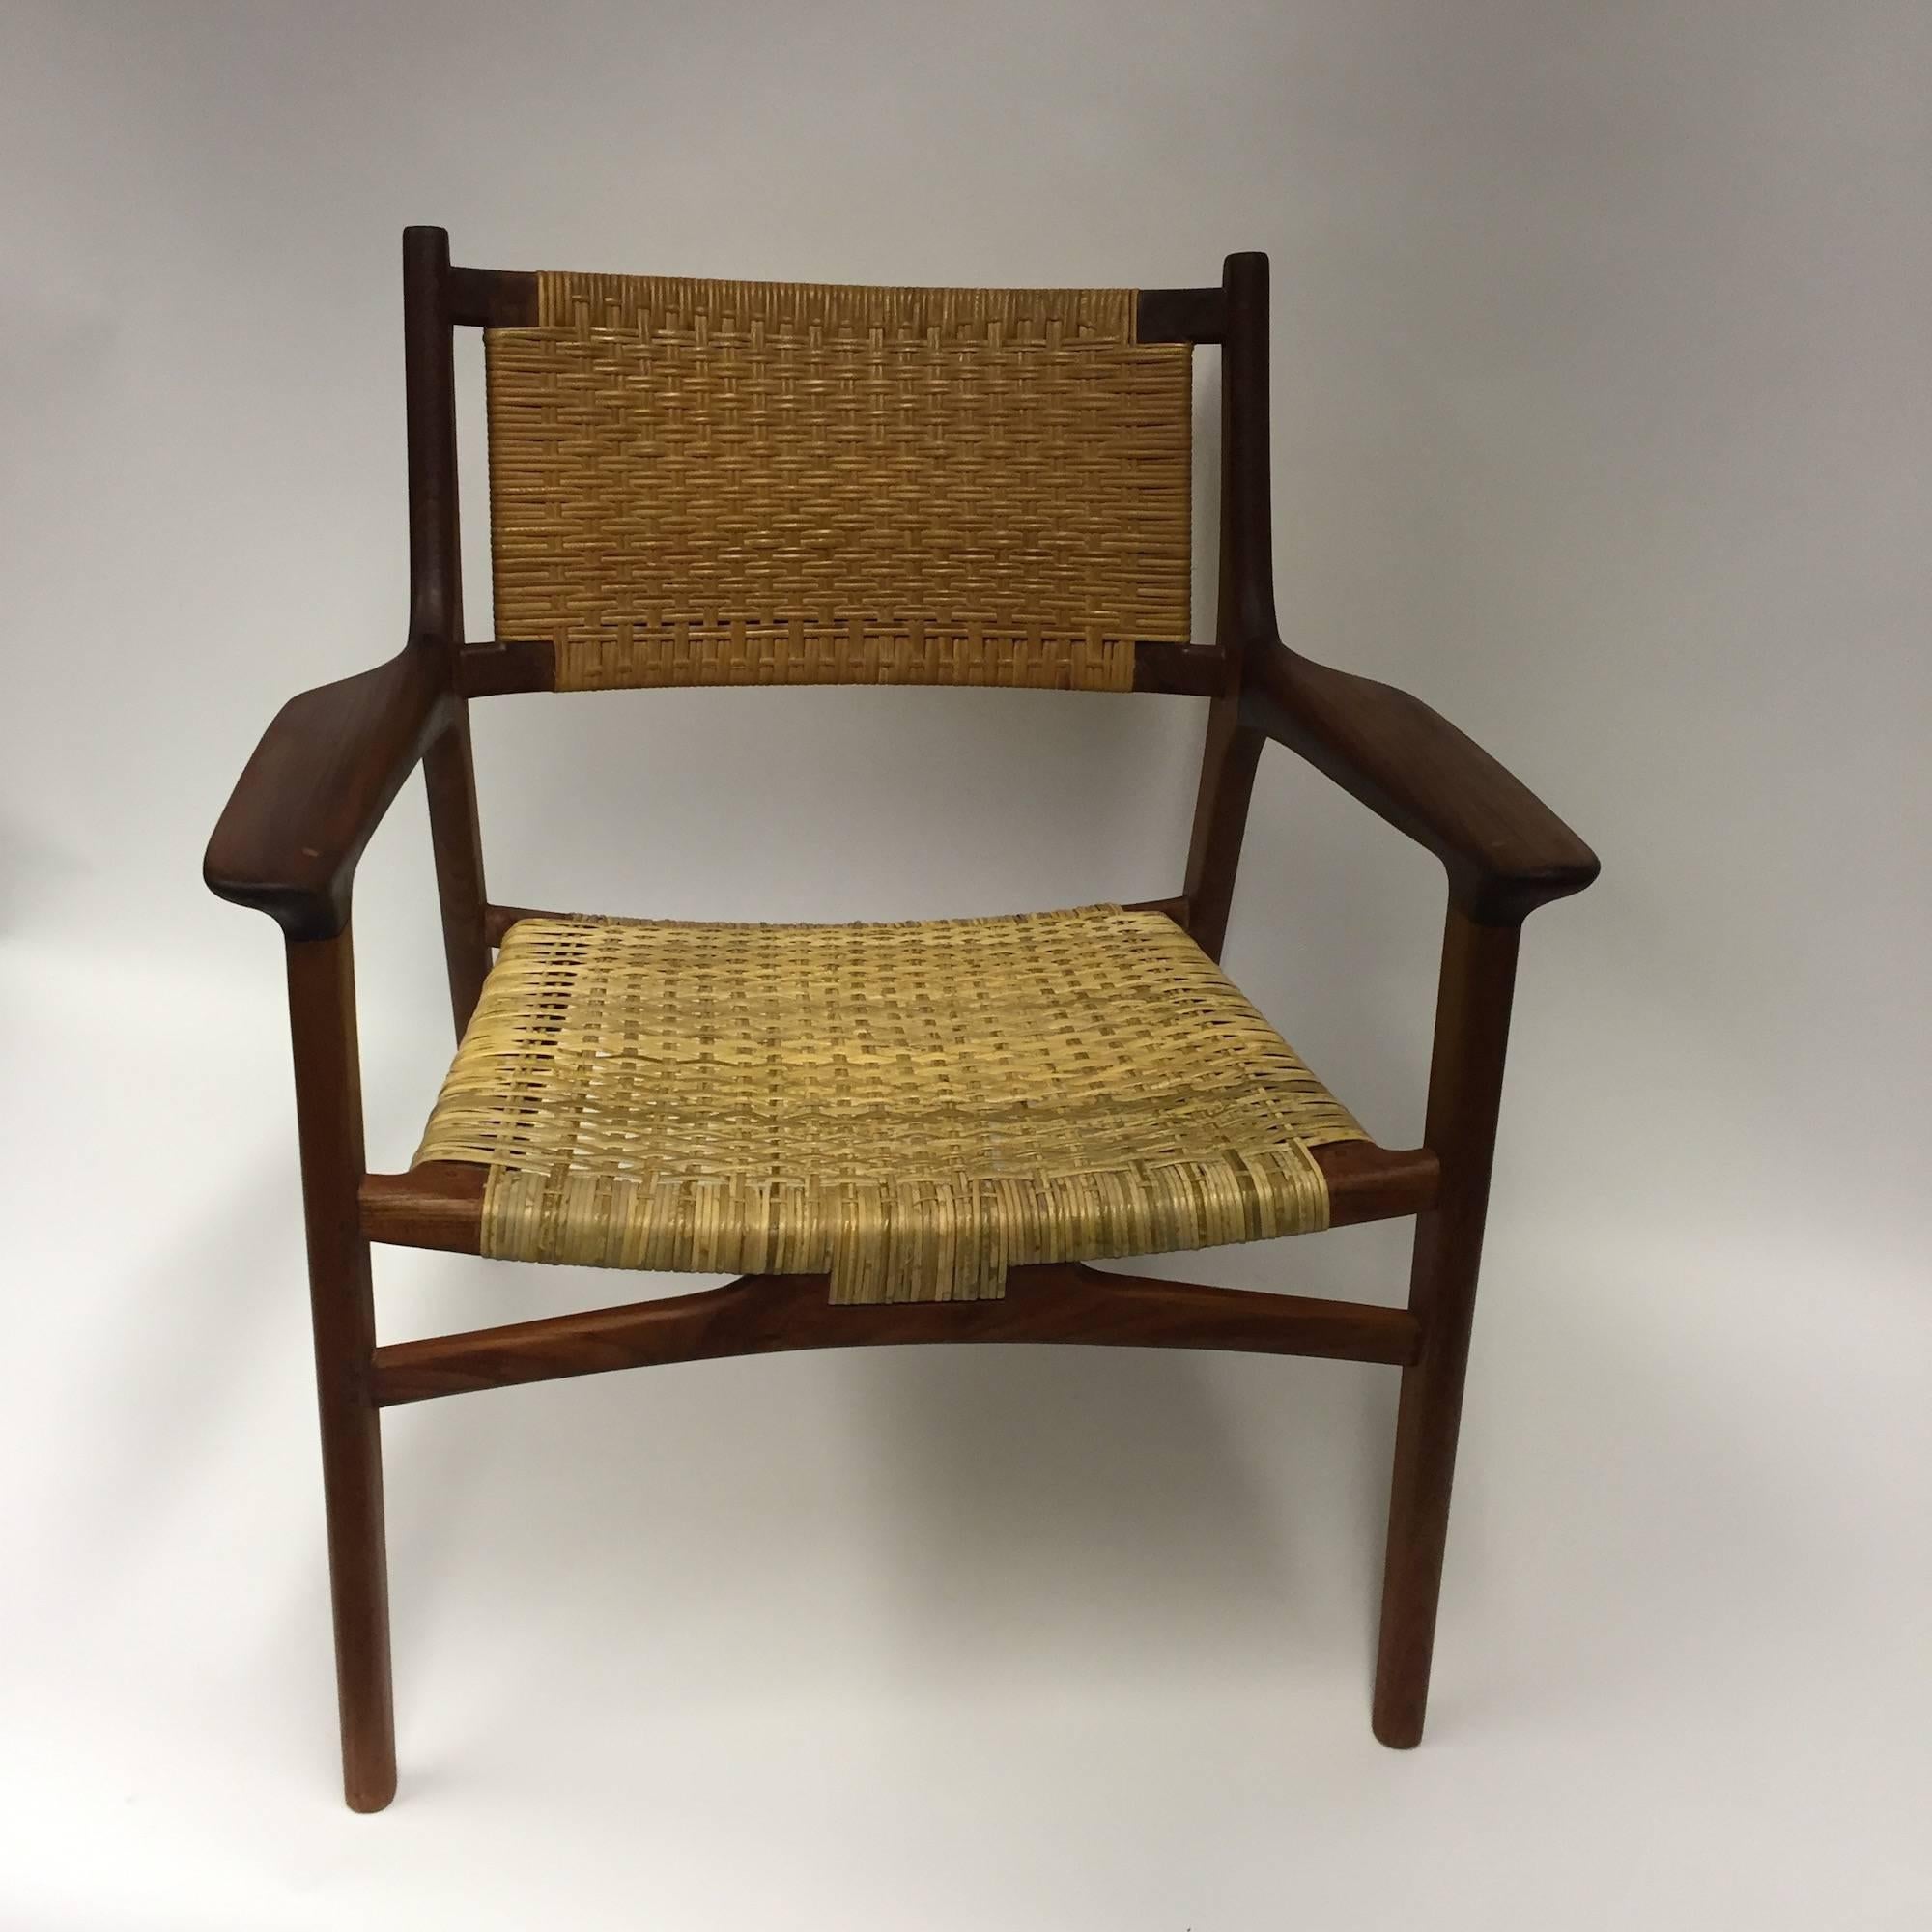 Danish Hans J. Wegner for Johannes Hansen JH-516 Teak Cane Easy Chair, 1951